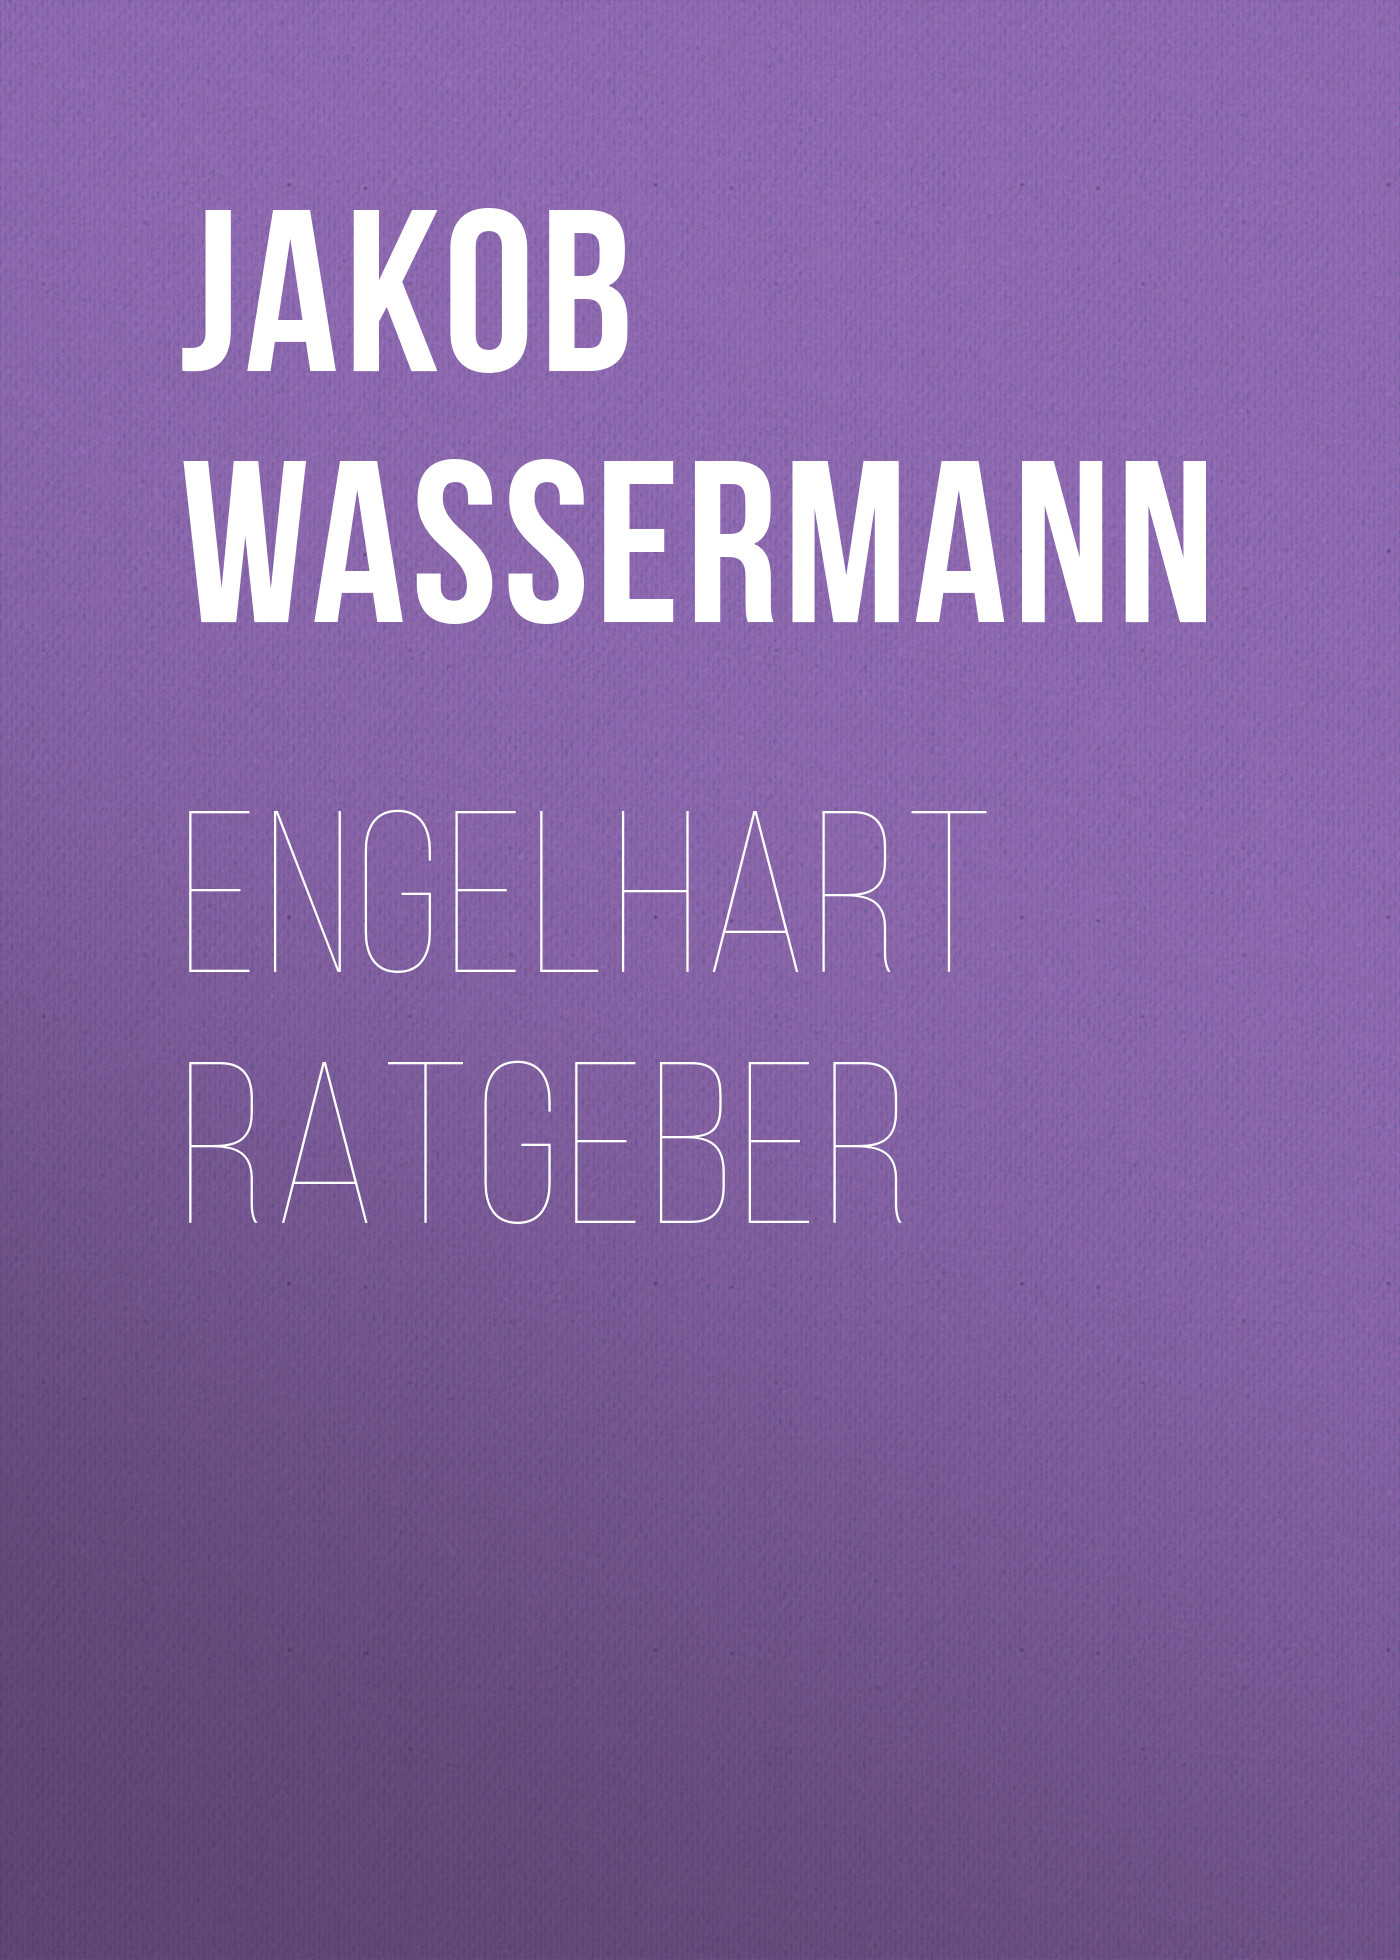 Книга Engelhart Ratgeber из серии , созданная Jakob Wassermann, может относится к жанру Зарубежная старинная литература, Зарубежная классика. Стоимость электронной книги Engelhart Ratgeber с идентификатором 34337338 составляет 0 руб.